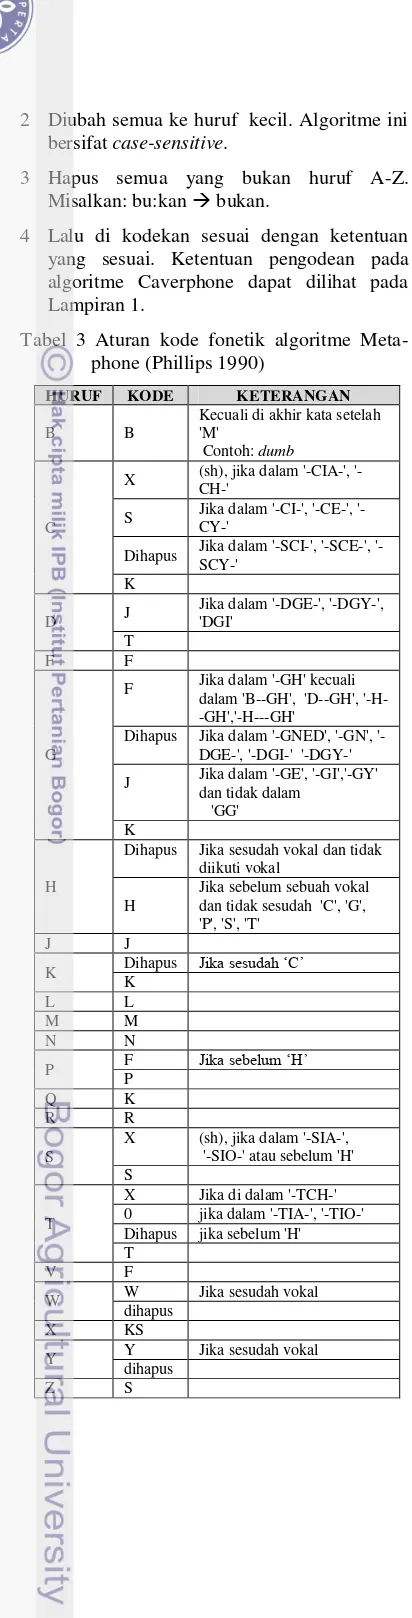 Tabel 3 Aturan kode fonetik algoritme Meta-